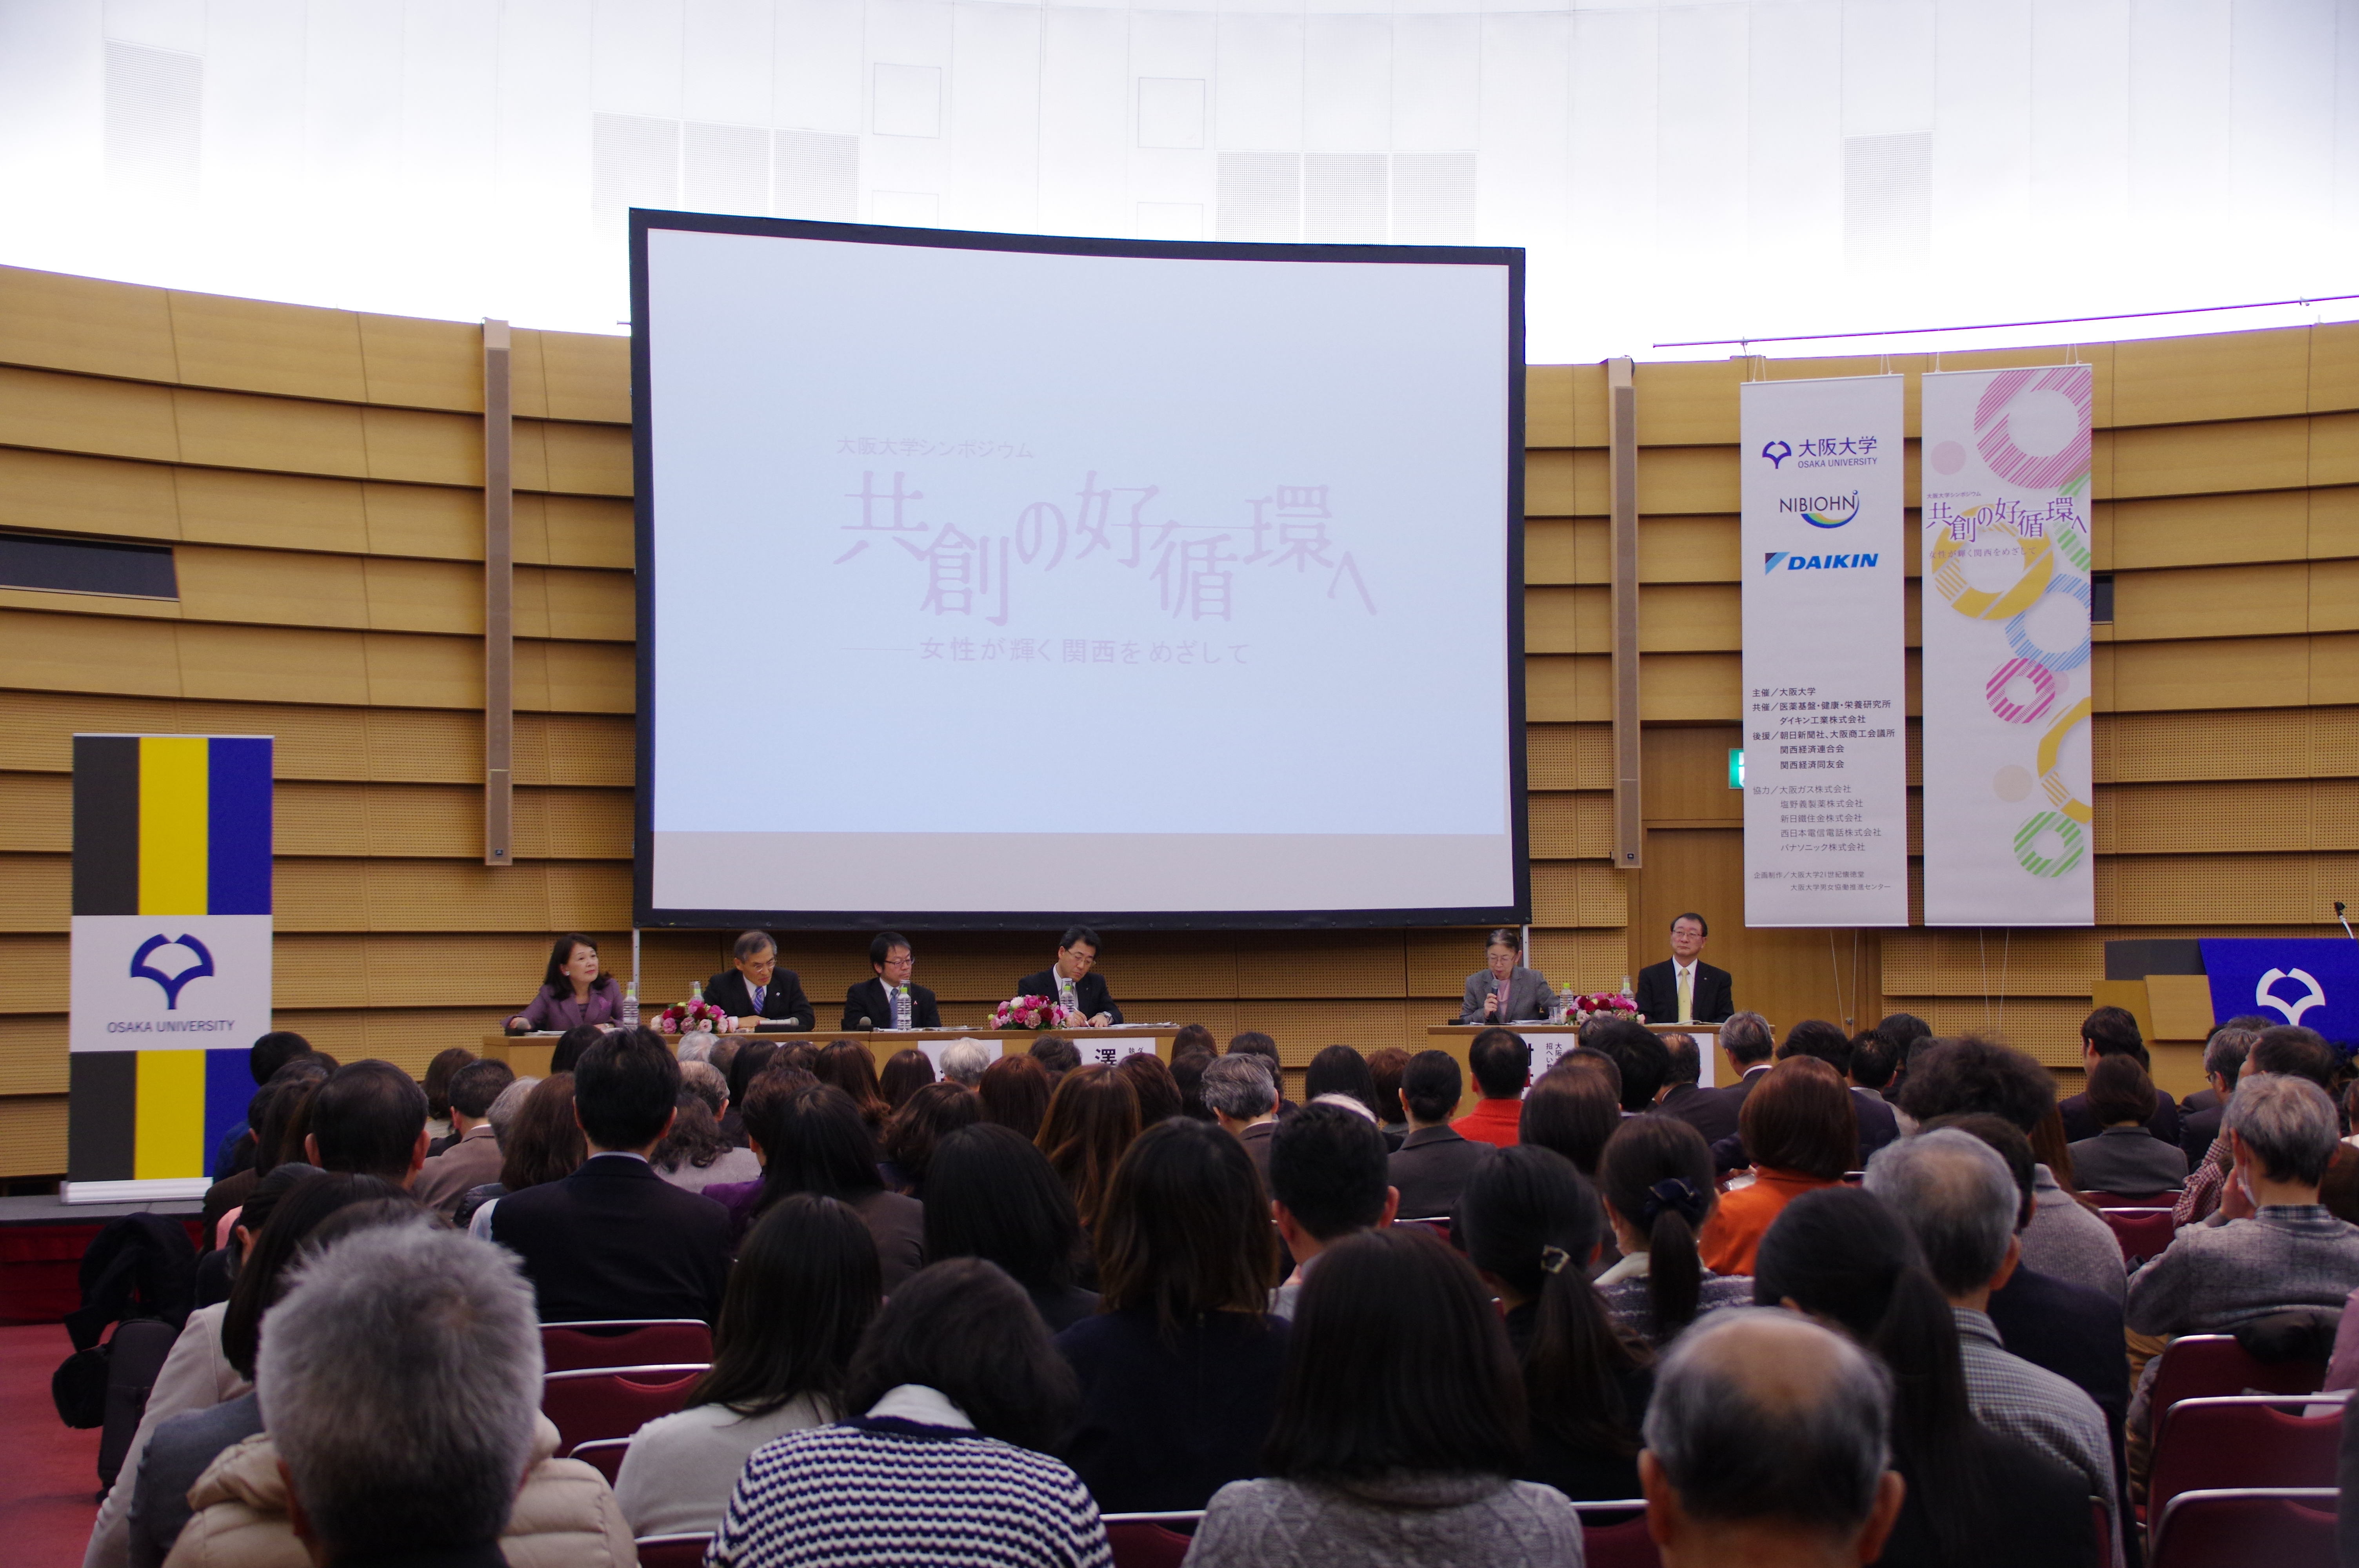 「大阪大学シンポジウム」を開催しました